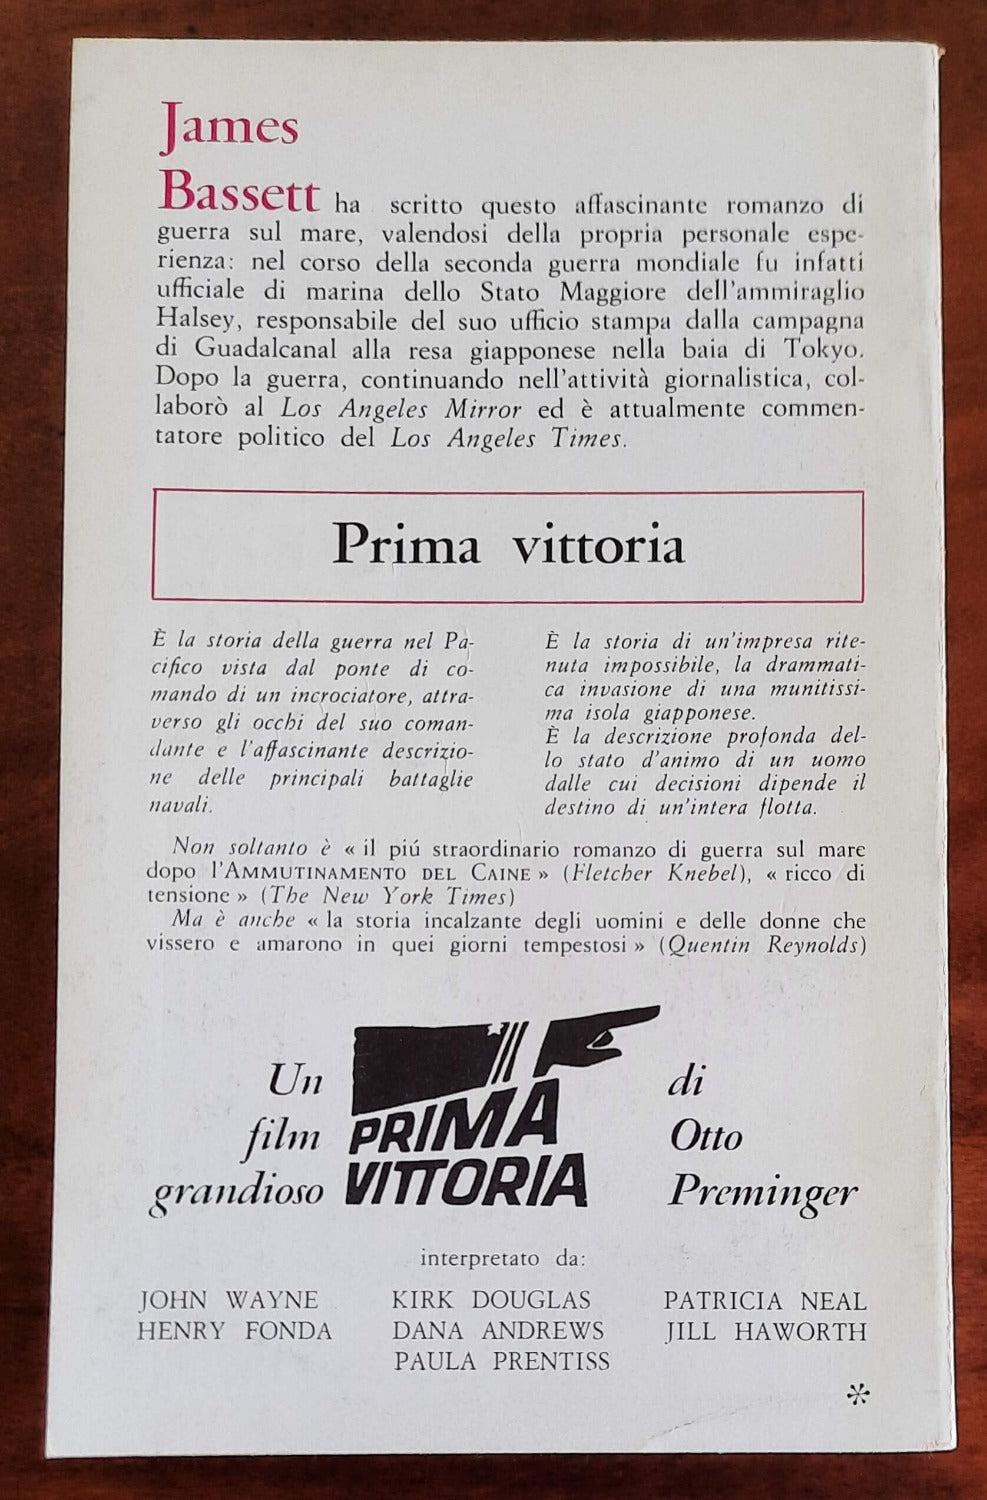 Prima vittoria - Dall’oglio Editore